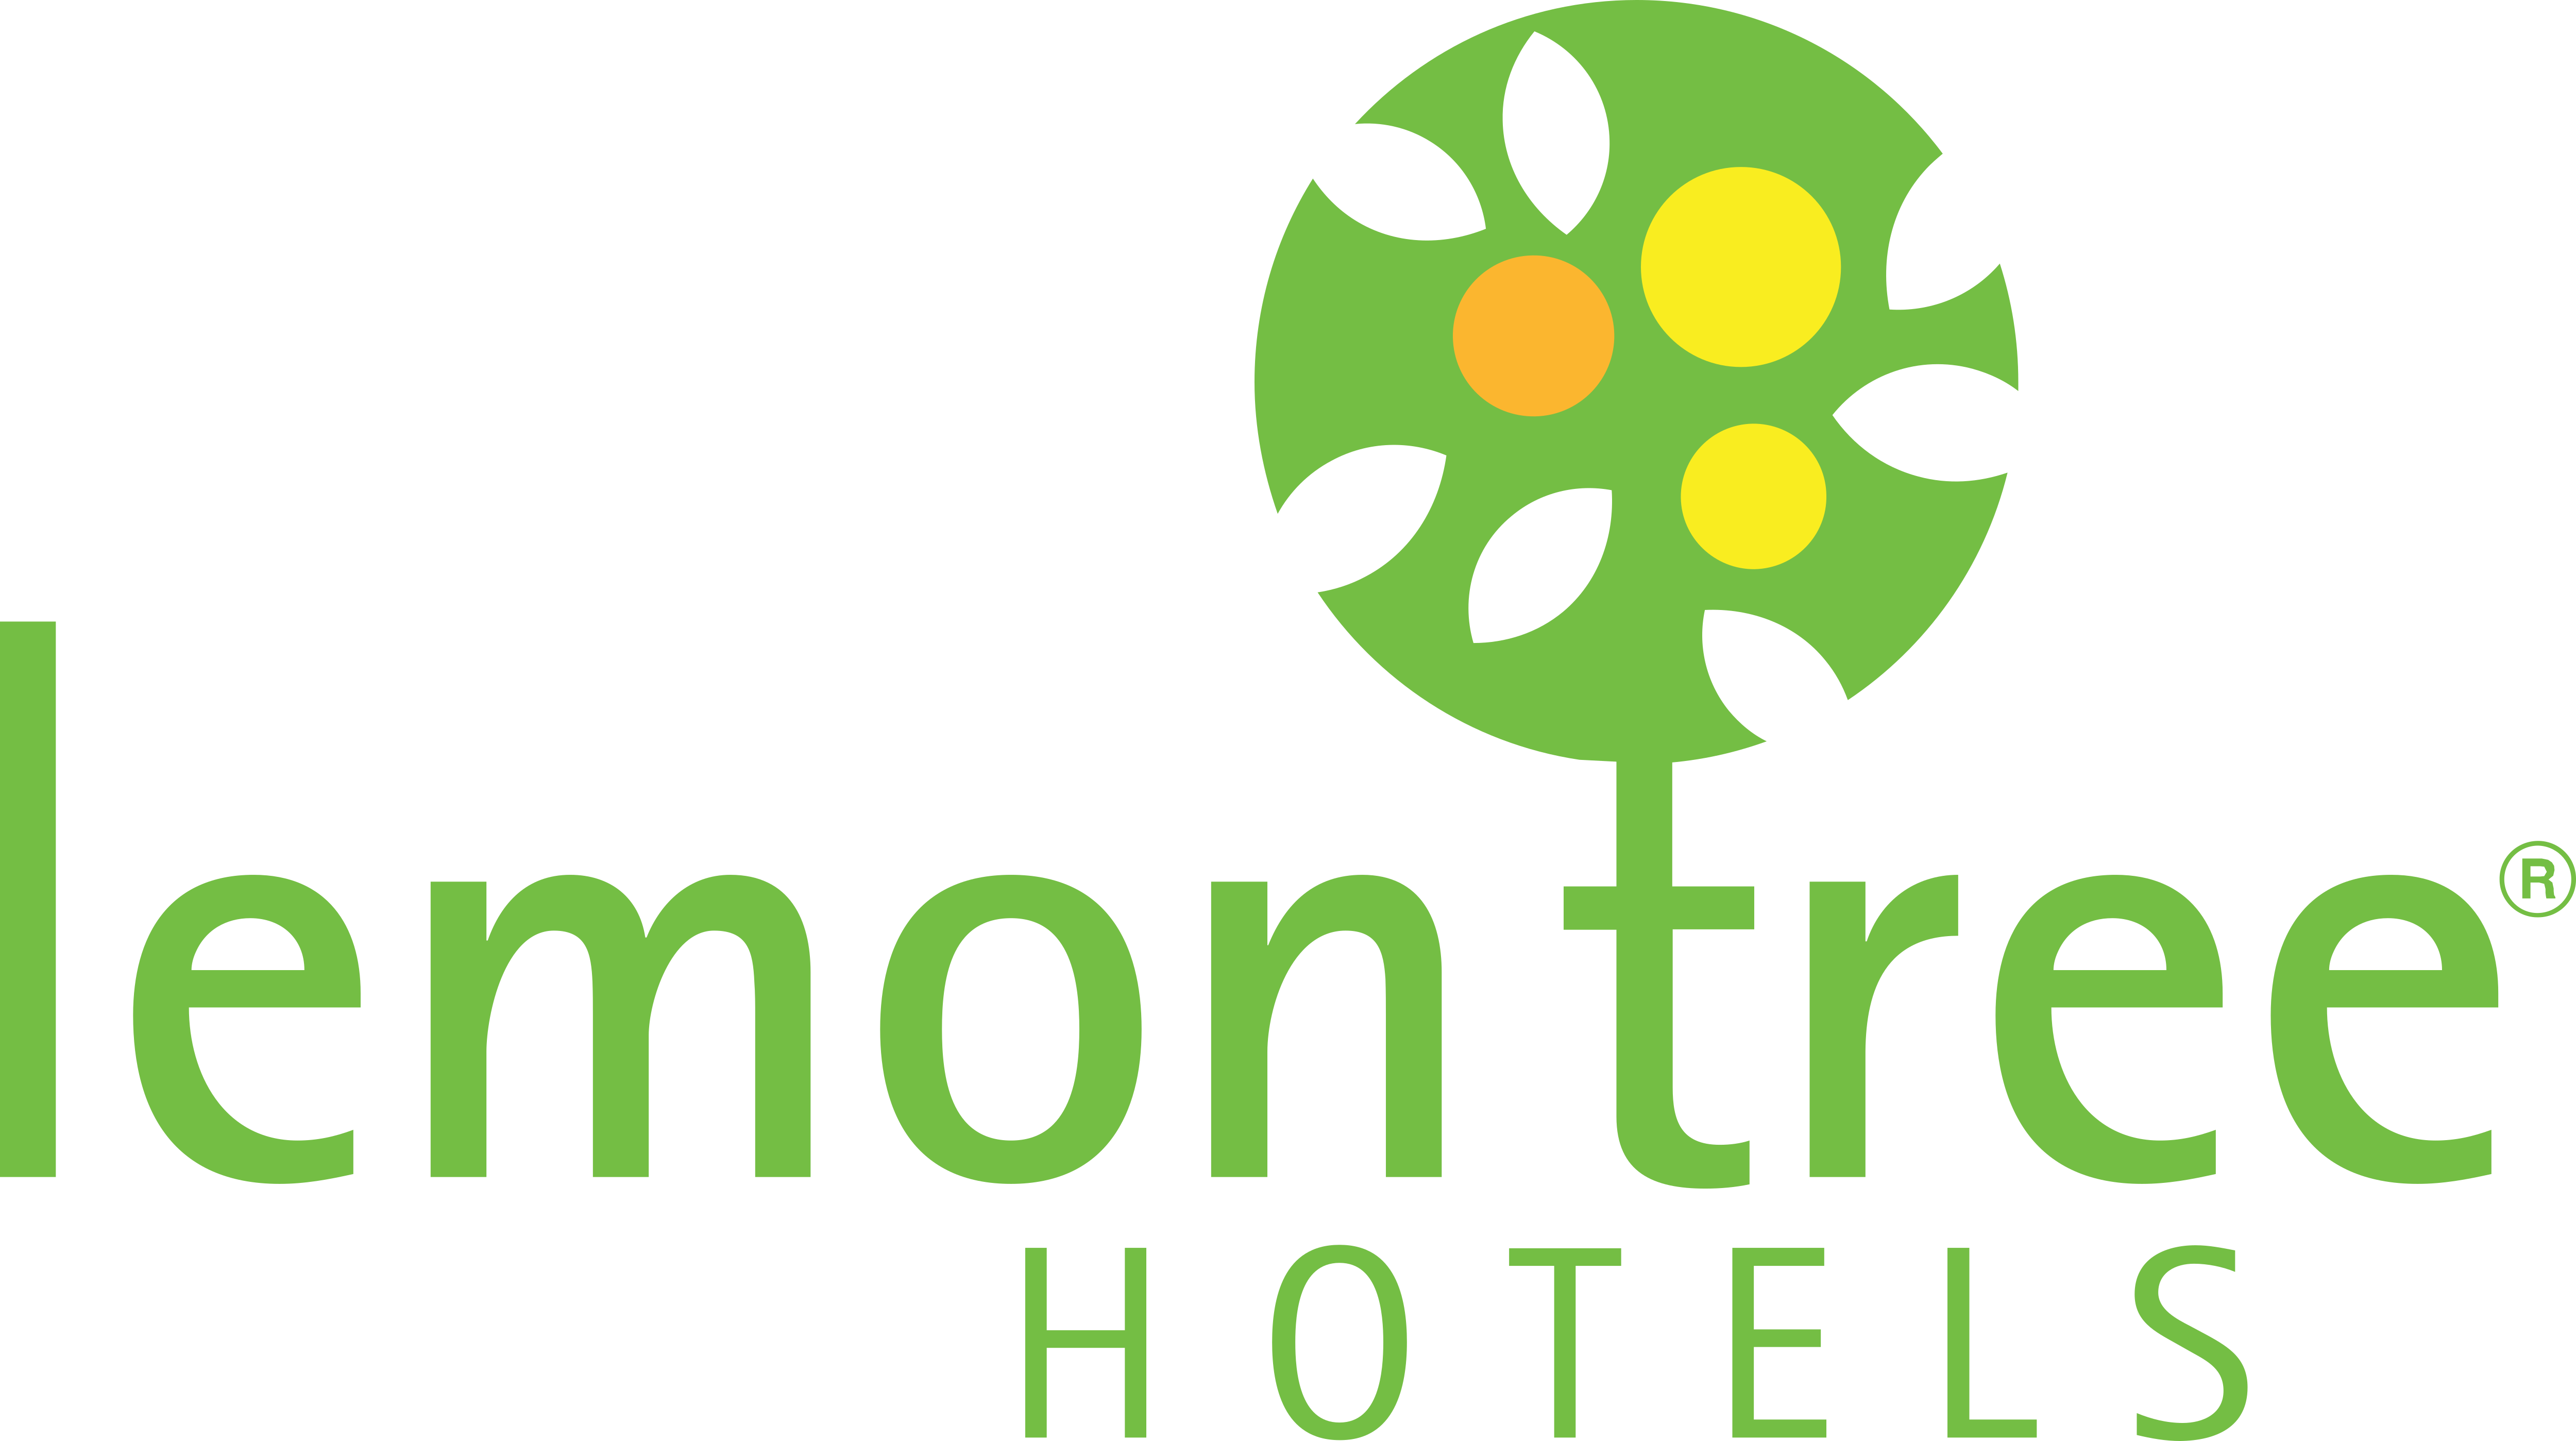 Lemon Tree Hotels – Logos Download